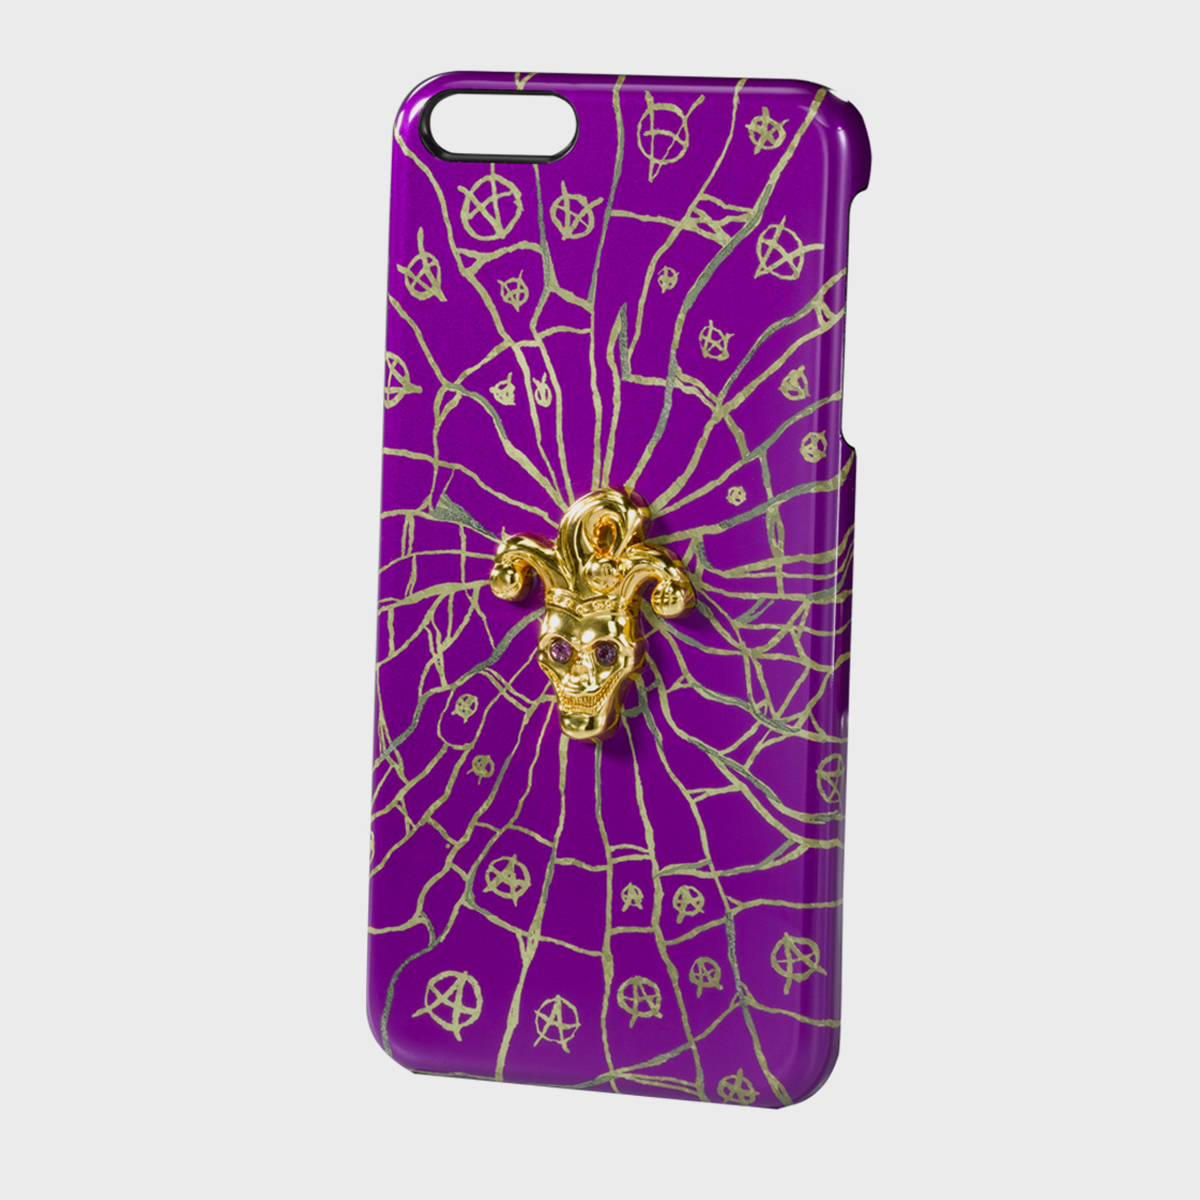 Joker Crest iPhone case 6 Plus (3)